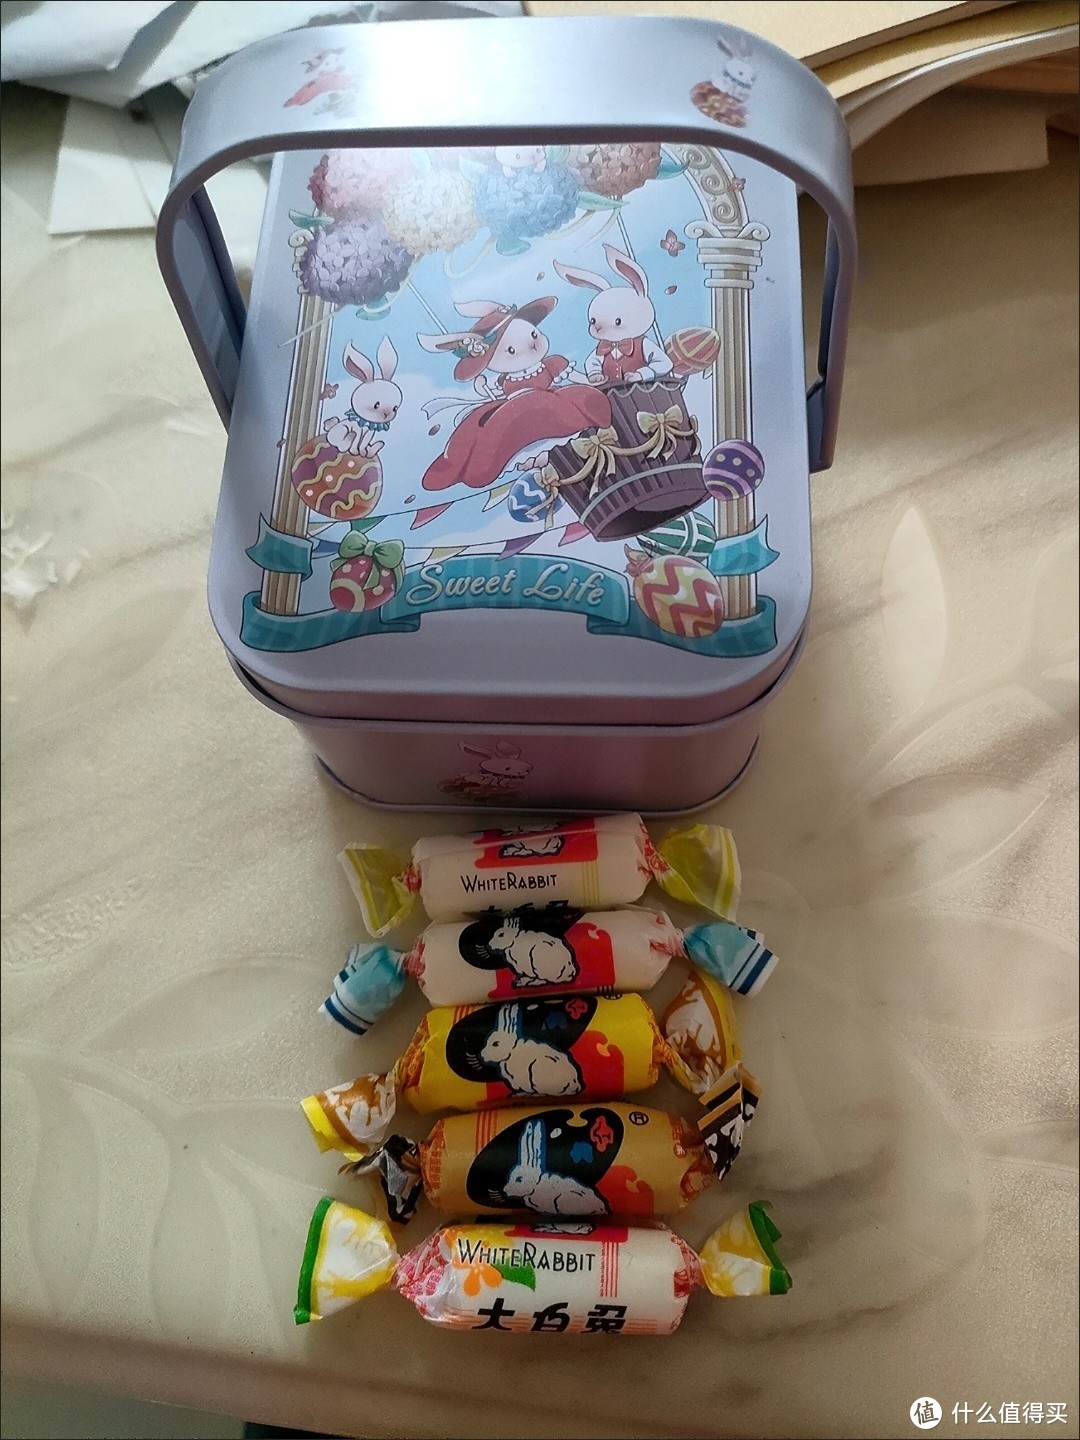 圣诞节的甜蜜礼物——上海大白兔奶糖118g礼盒